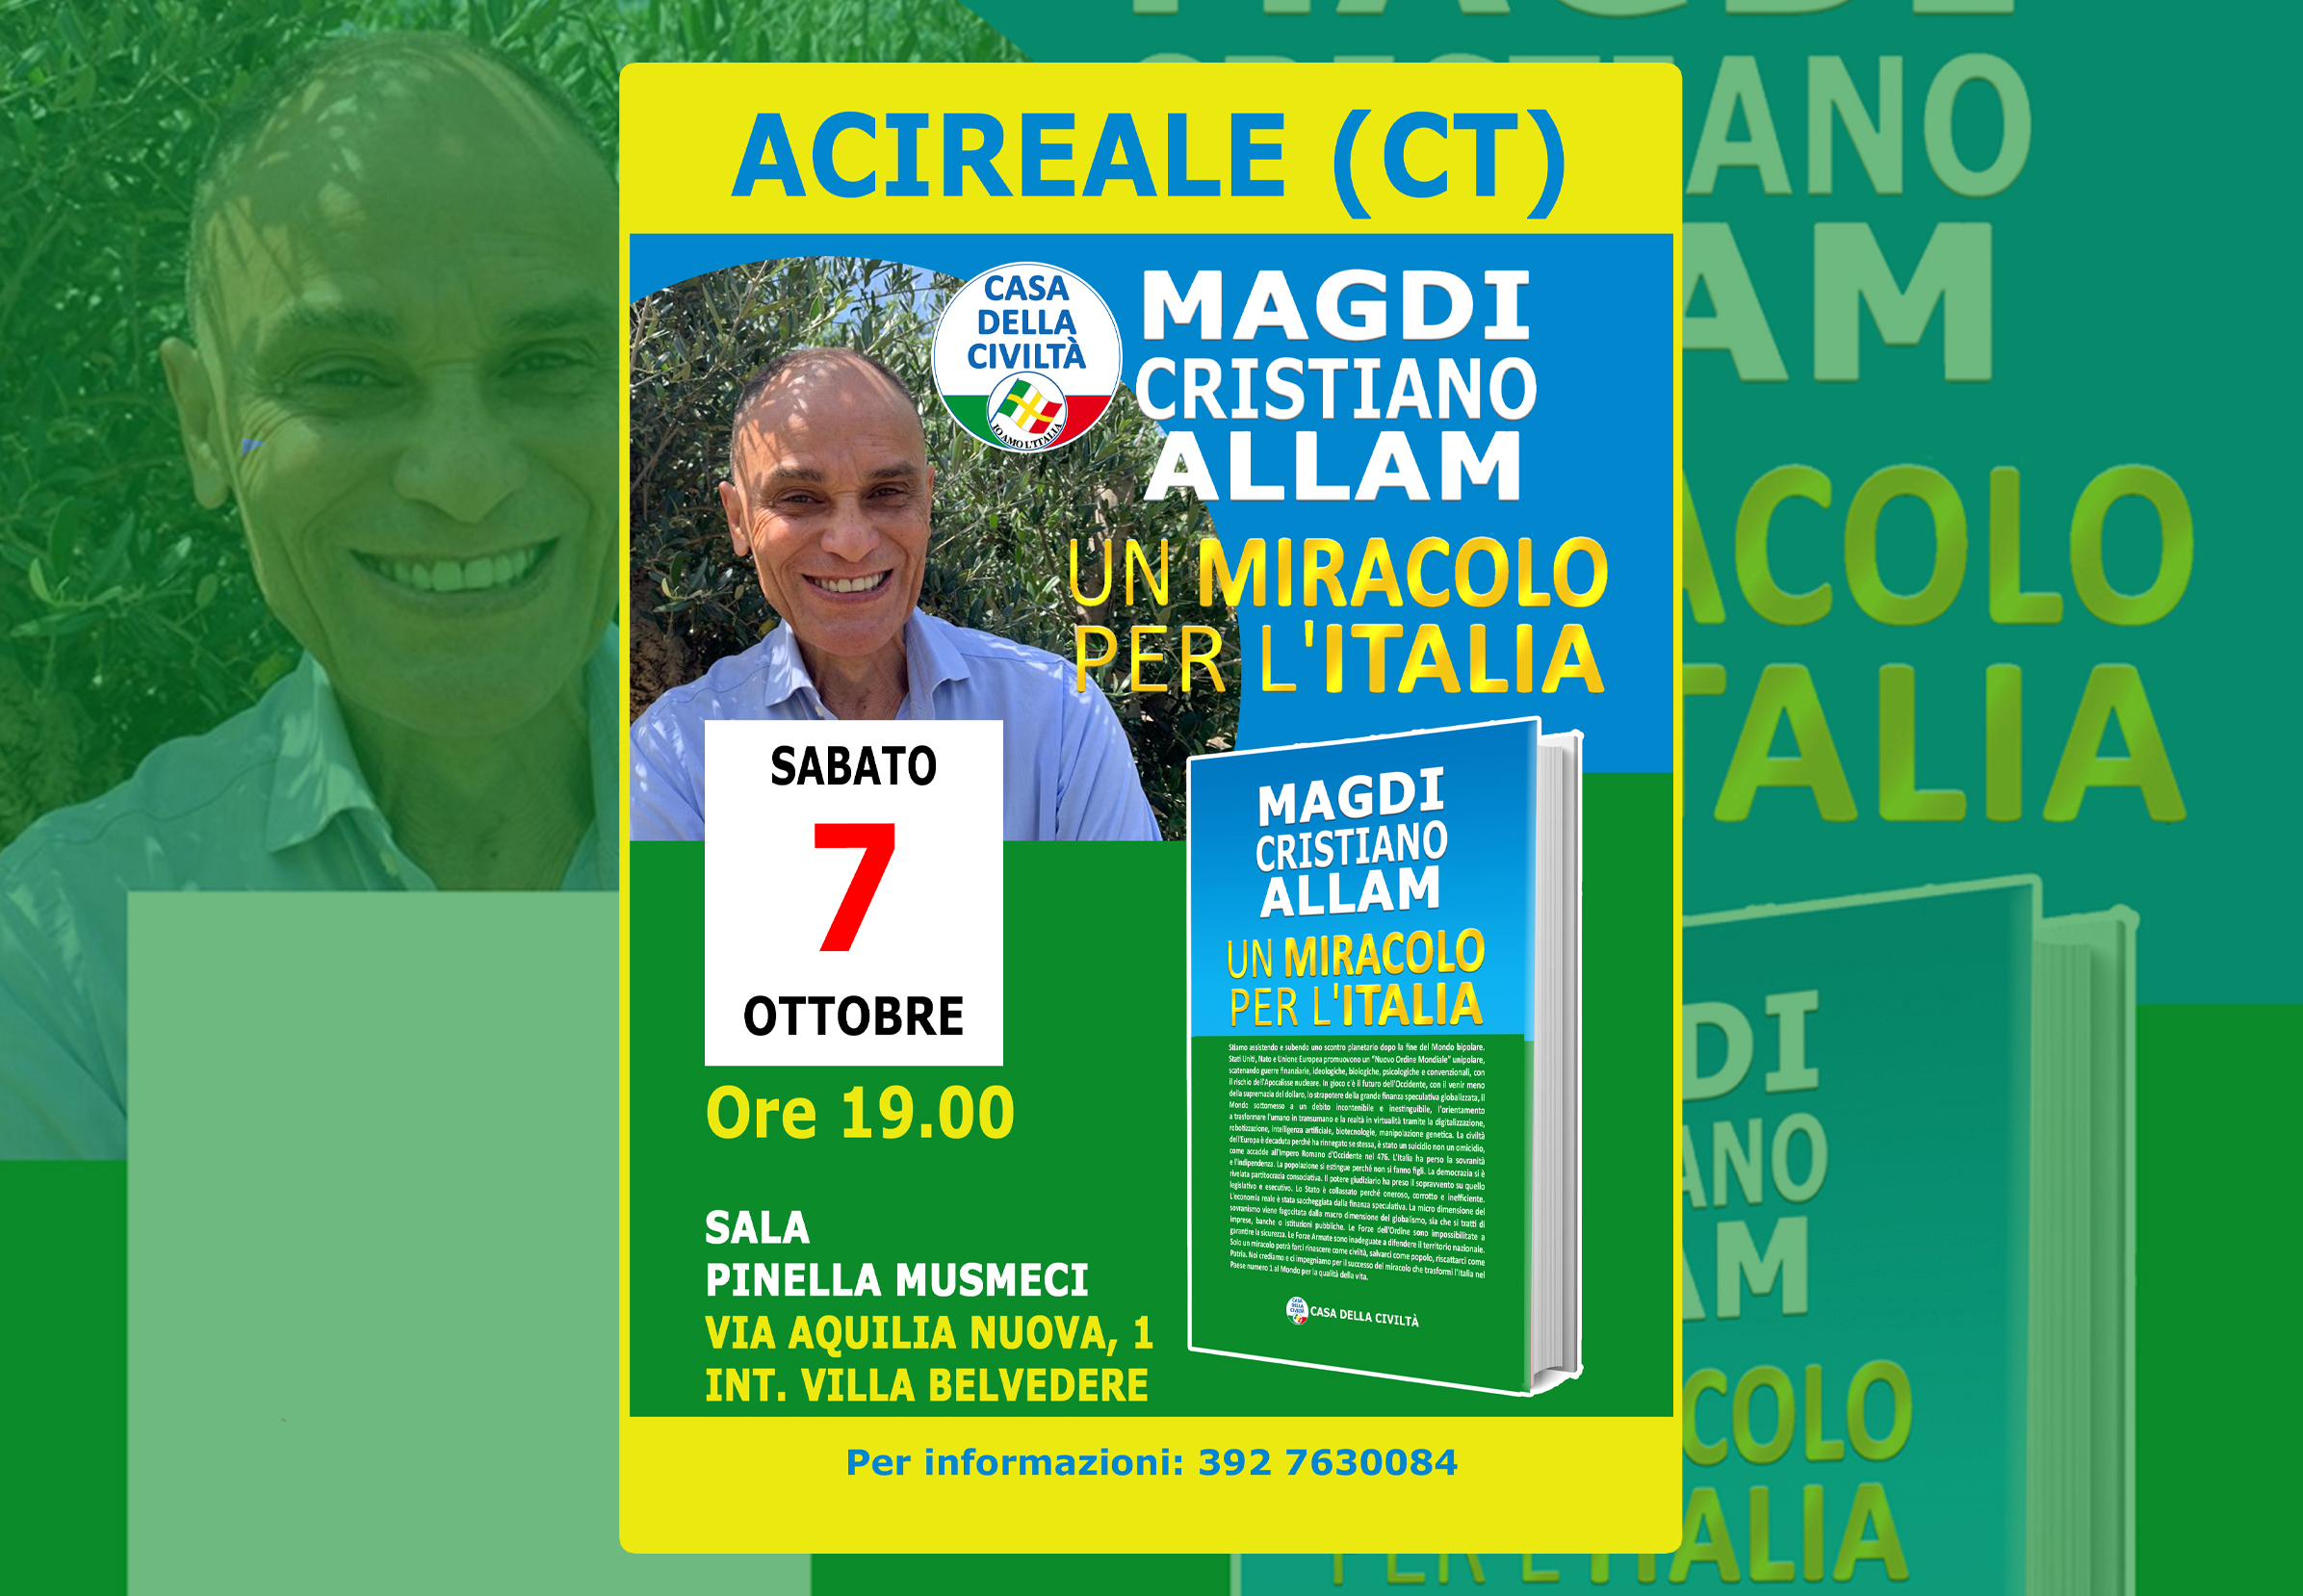 Sabato 7 ottobre– ore 19.00 – Presentazione “UN MIRACOLO PER L’ITALIA” a ACIREALE (CT)